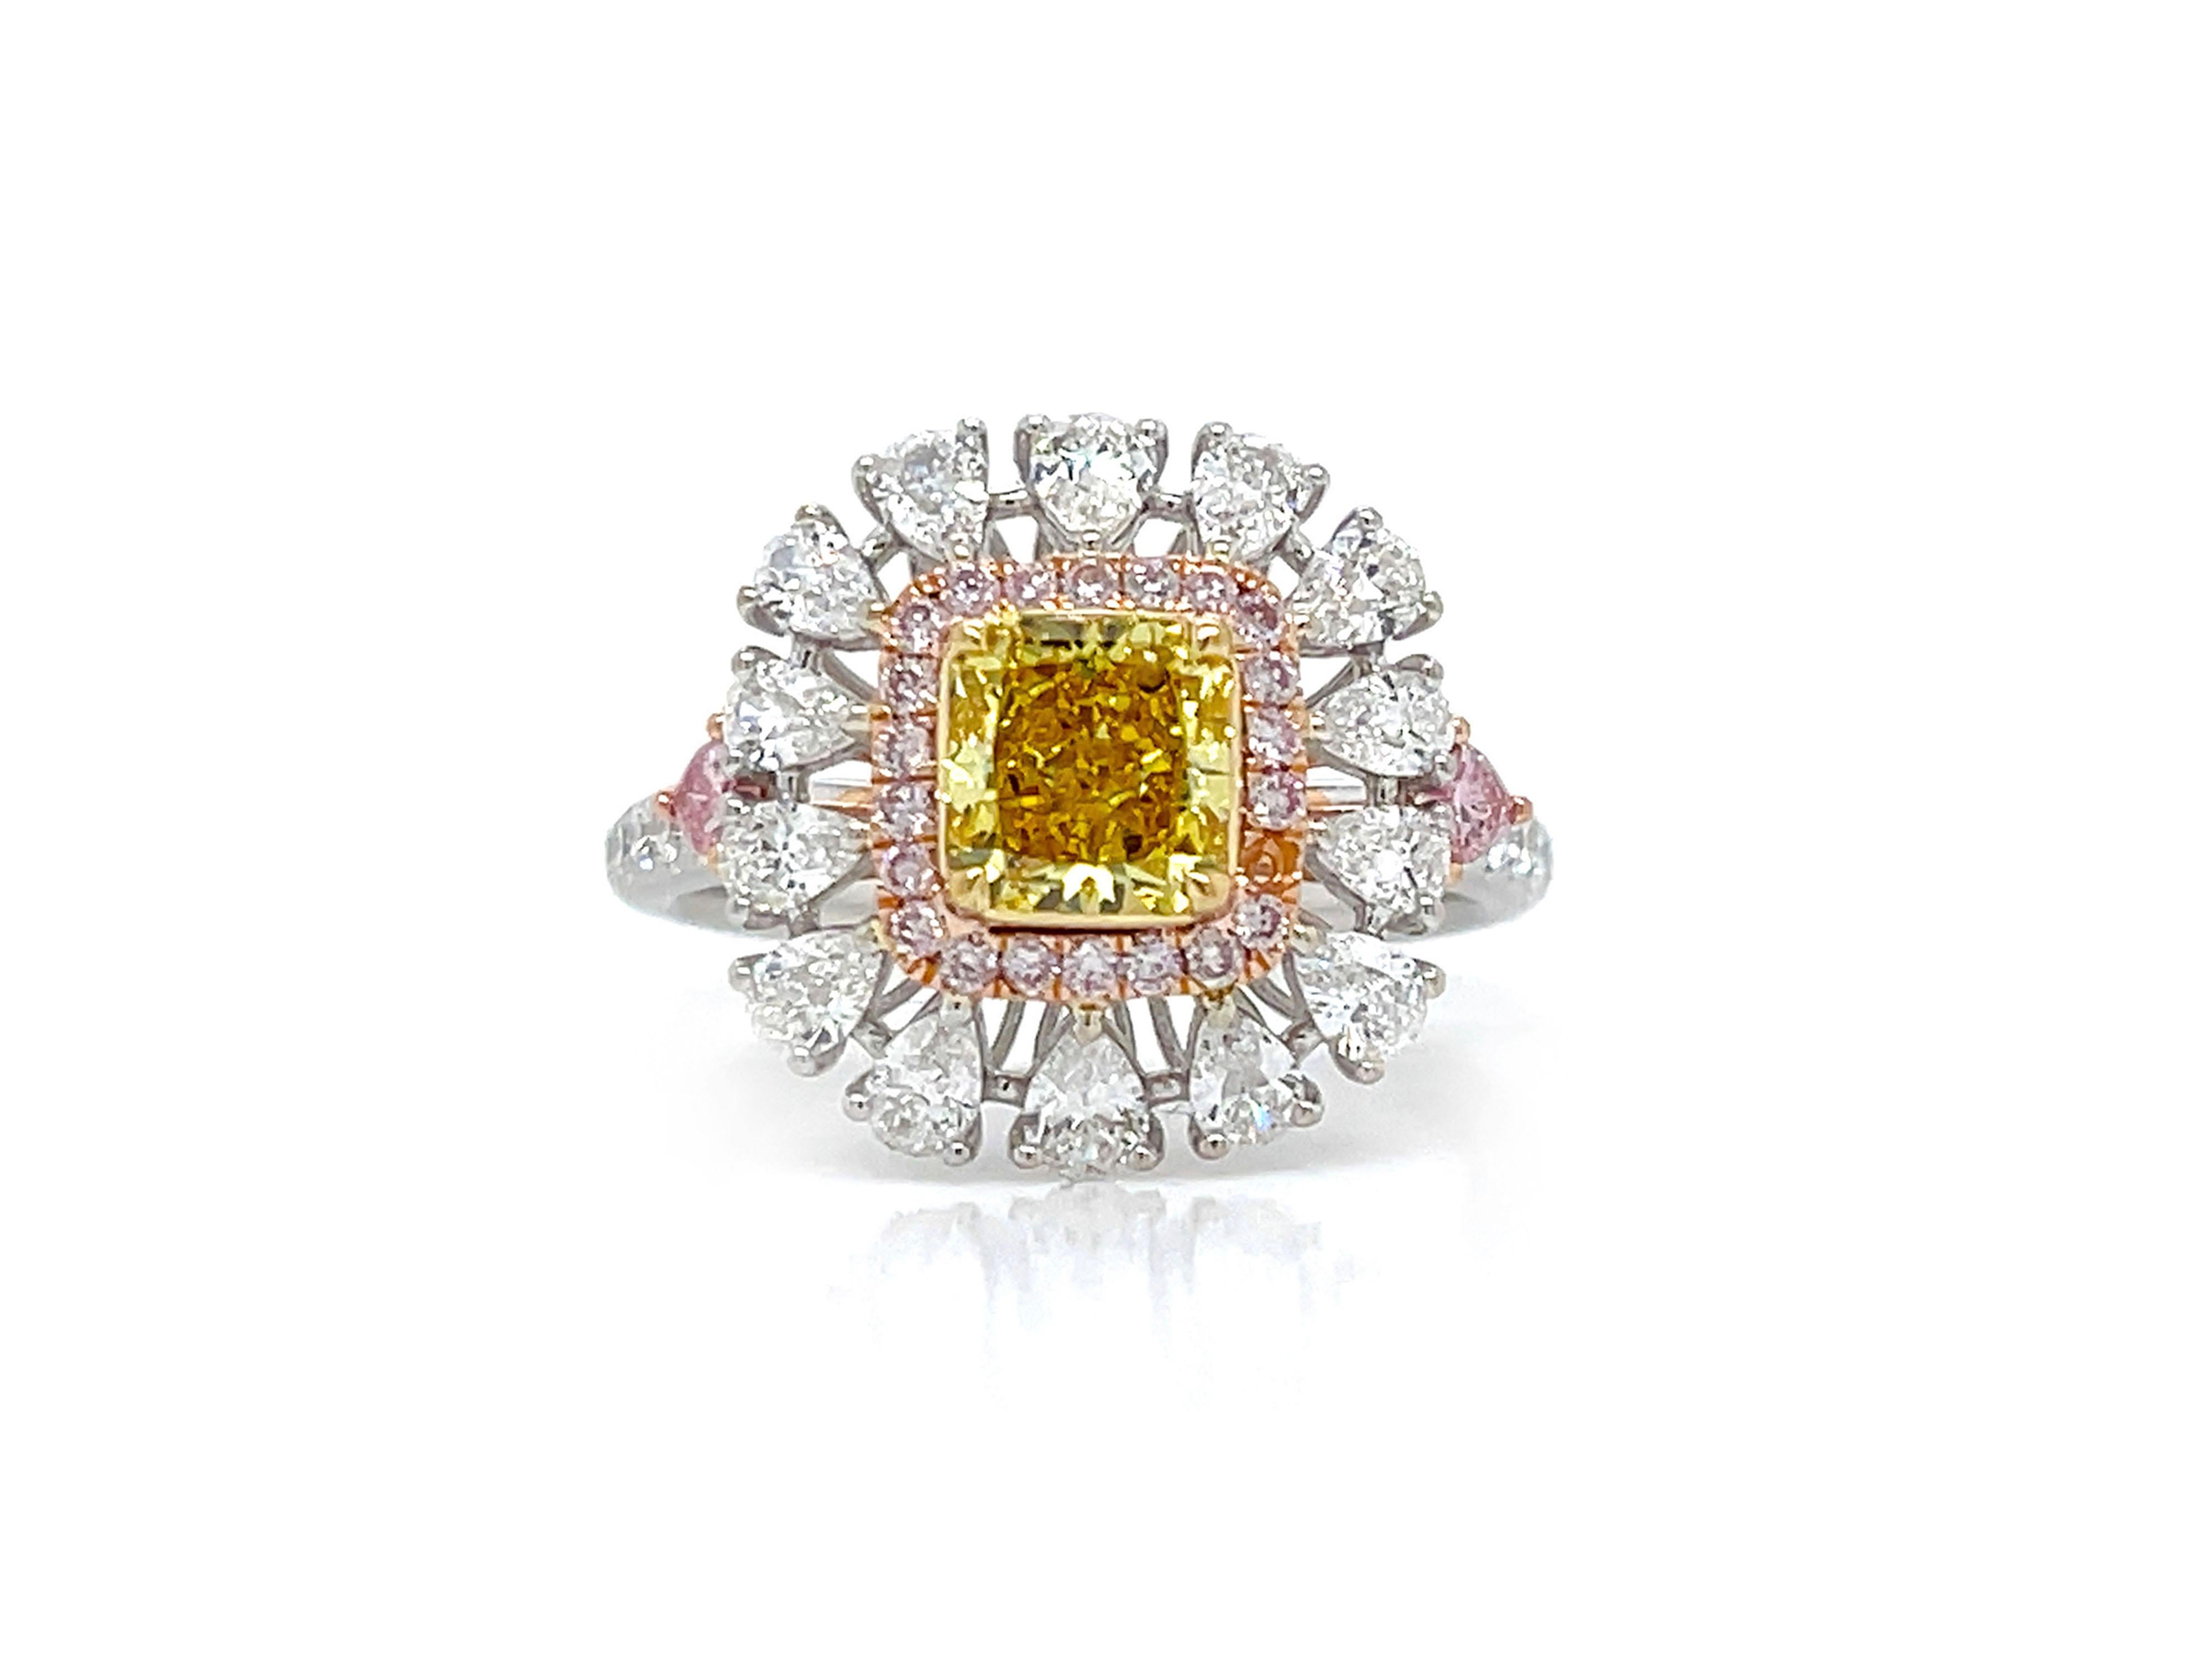 Ein wunderschöner Verlobungs-Cocktailring mit 1,02 Karat strahlendem Diamant im Fancy Vivid Yellow-Schliff, GIA-zertifiziert als VS2-Klarheit. Mit farbenfrohen Akzenten von 0,12 Karat Fancy Pink im herzförmigen Schliff an den Seiten bietet er einen